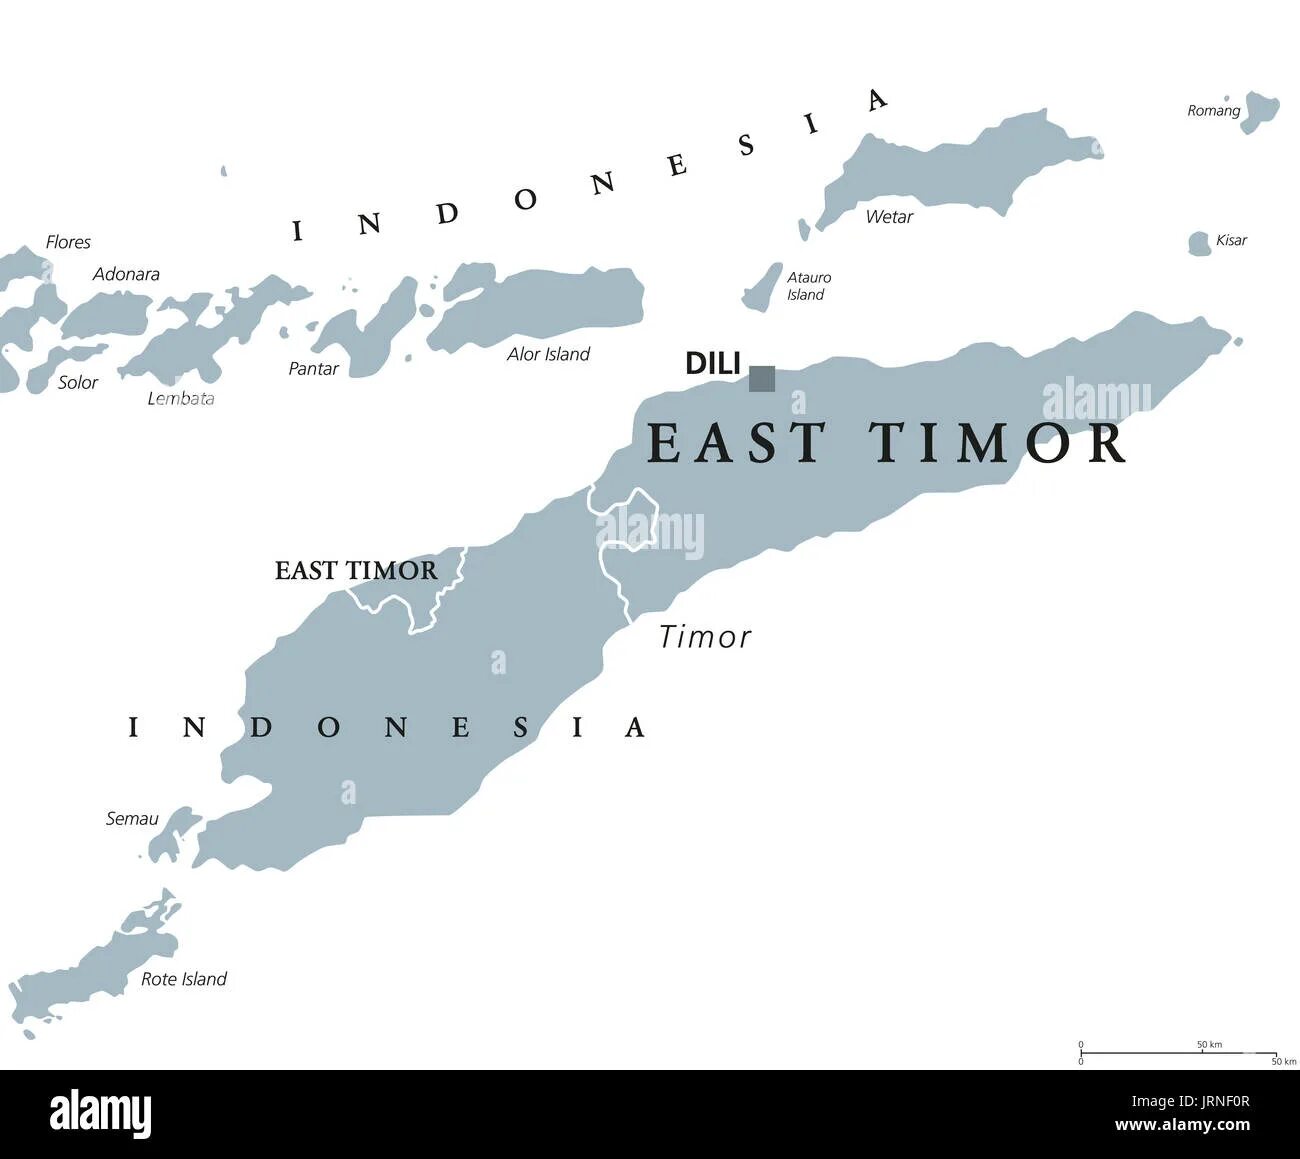 Тимор на карте. Восточный Тимор столица на карте. Государство Восточный Тимор.